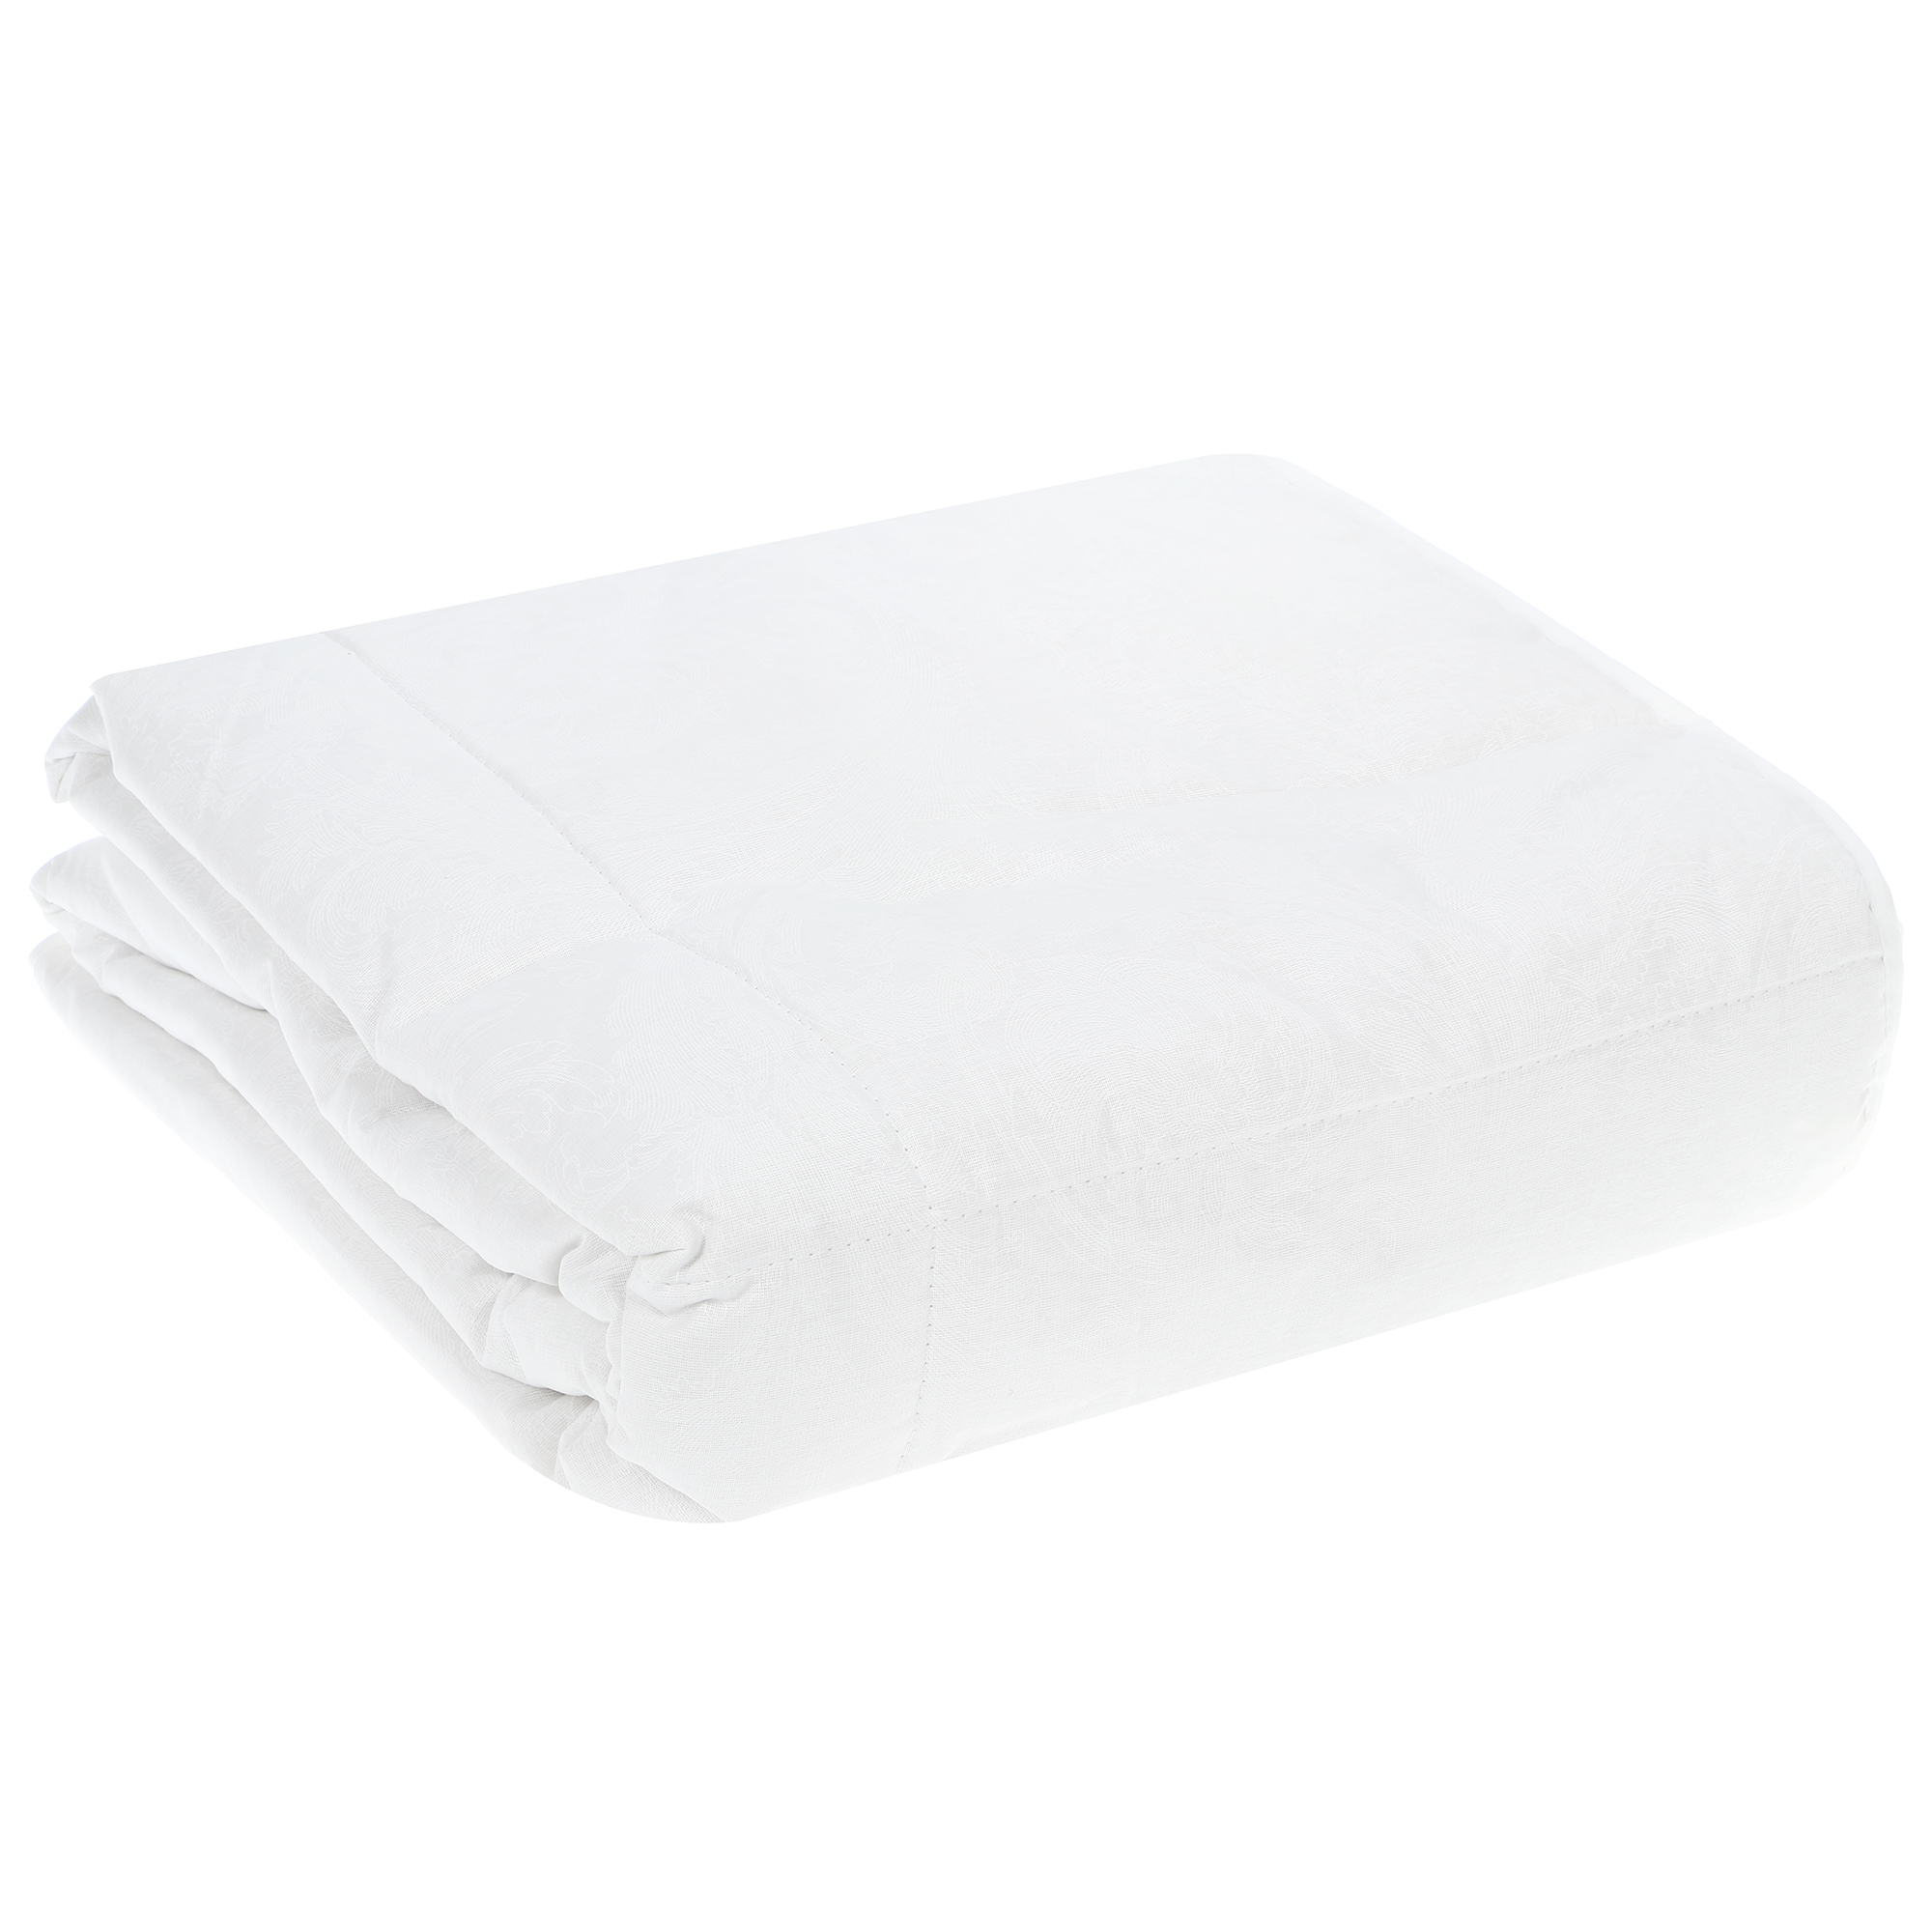 Одеяло Medsleep Skylor белое 140х200 см, цвет белый - фото 5